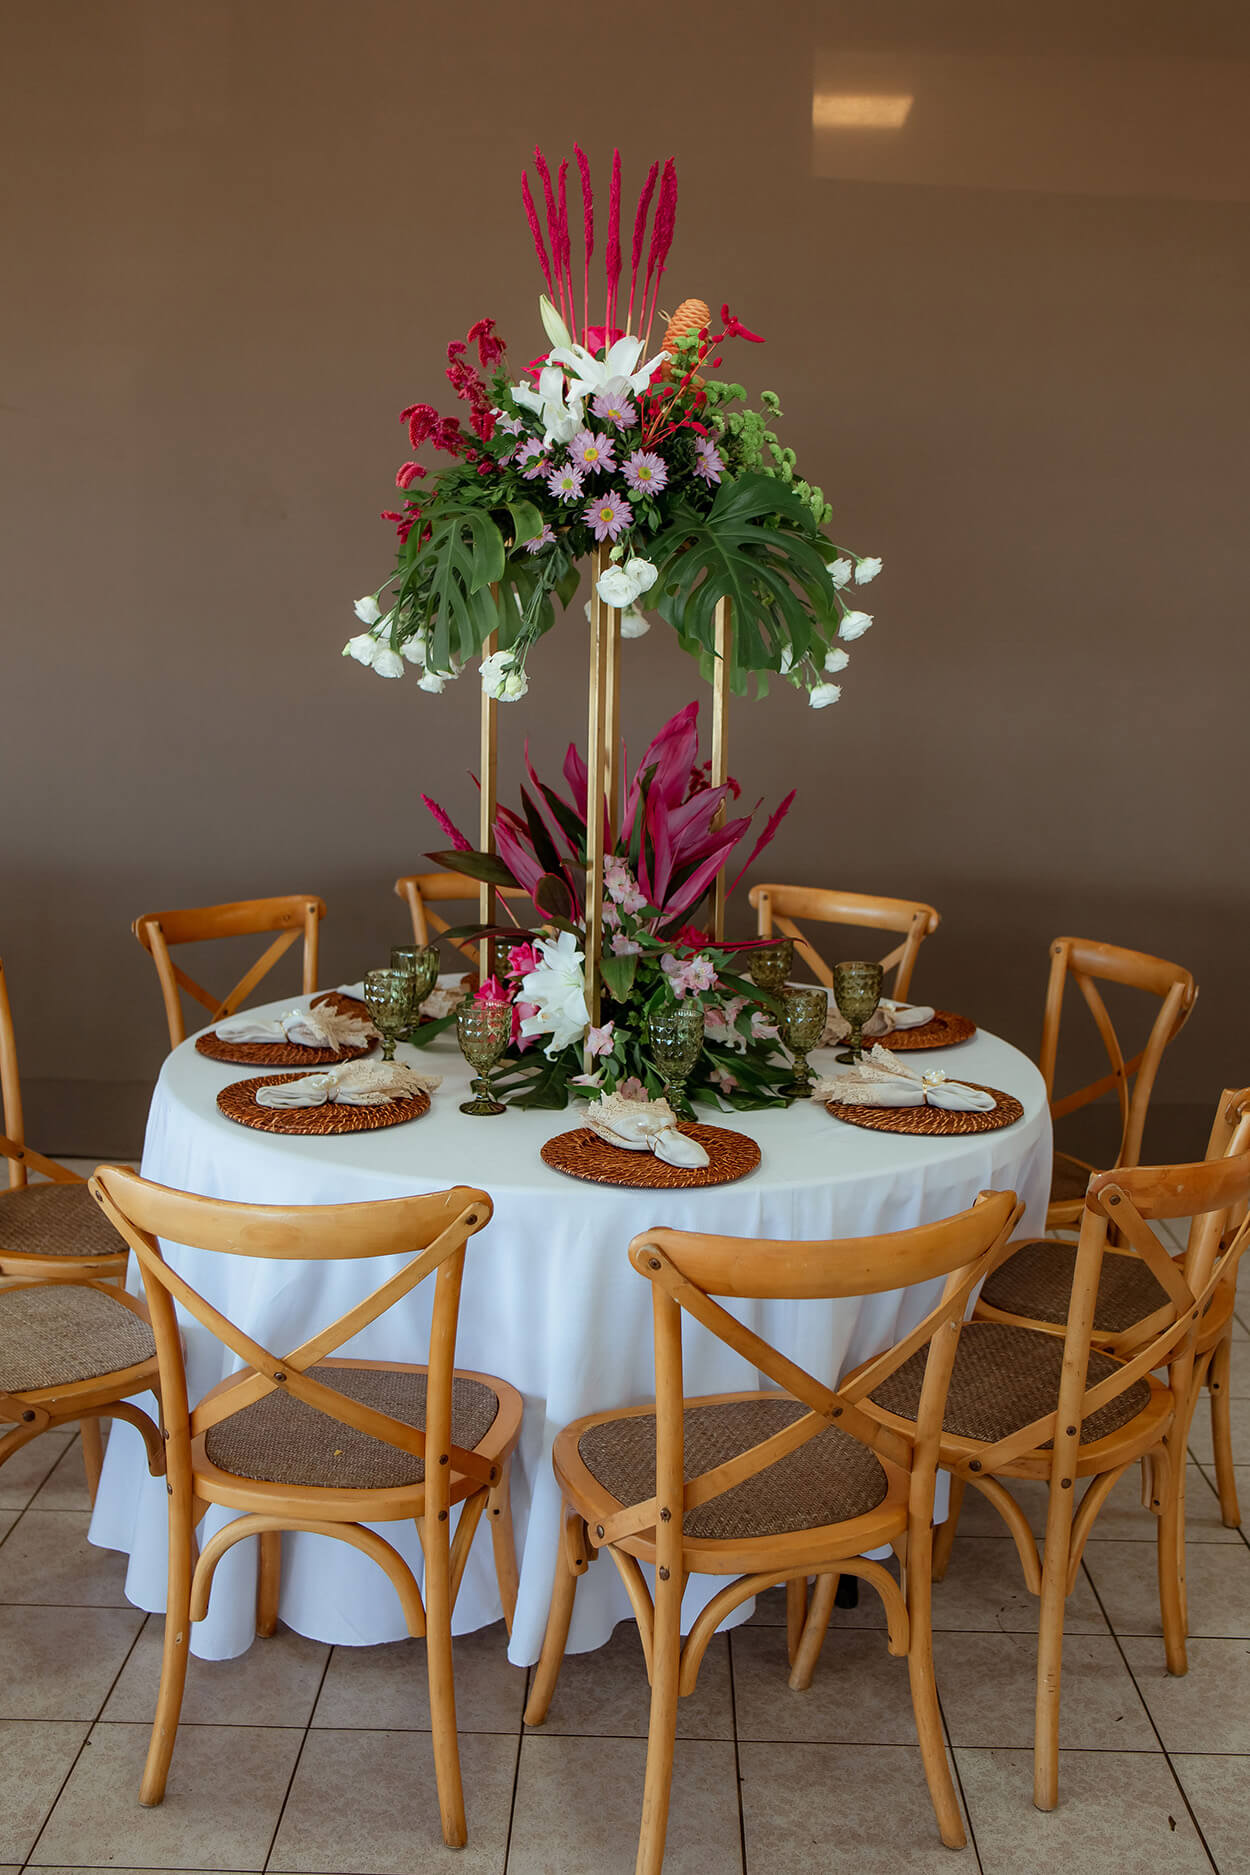 Mesa redonda com toalha branca com arranjos com flores brancas e rosas no centro